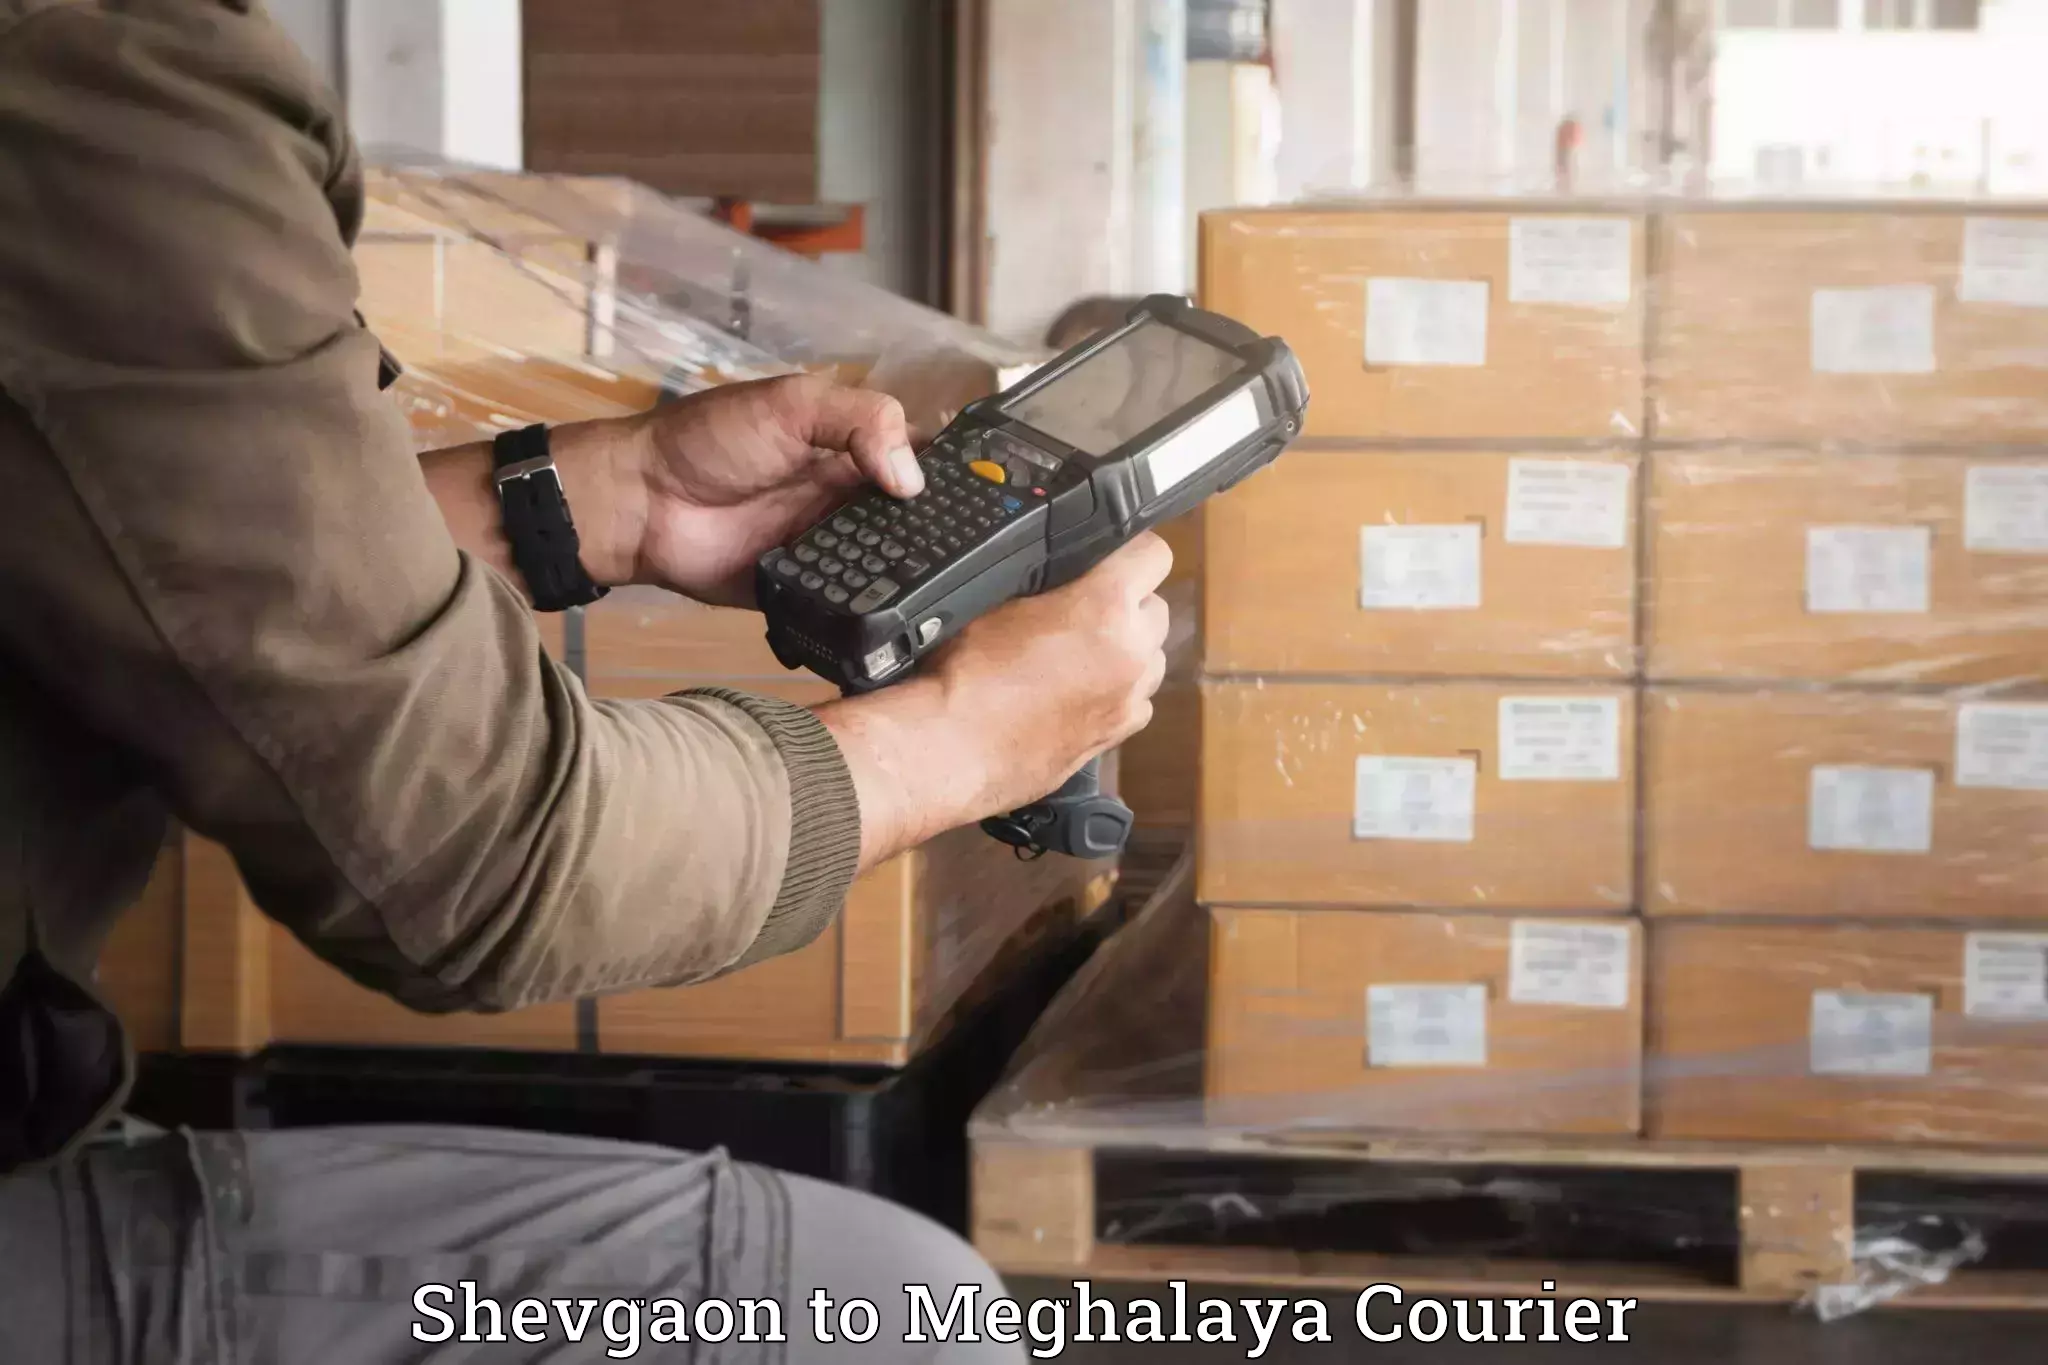 Luggage forwarding service Shevgaon to Meghalaya